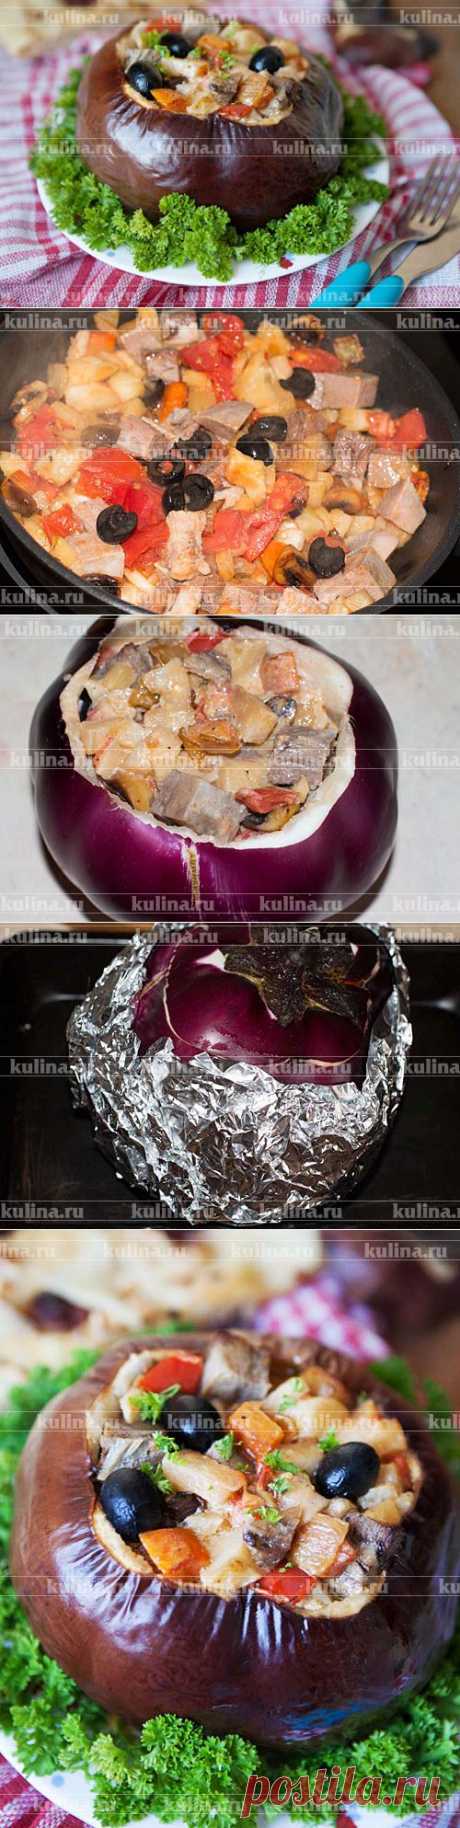 Баклажан фаршированный овощным рагу с языком – рецепт приготовления с фото от Kulina.Ru